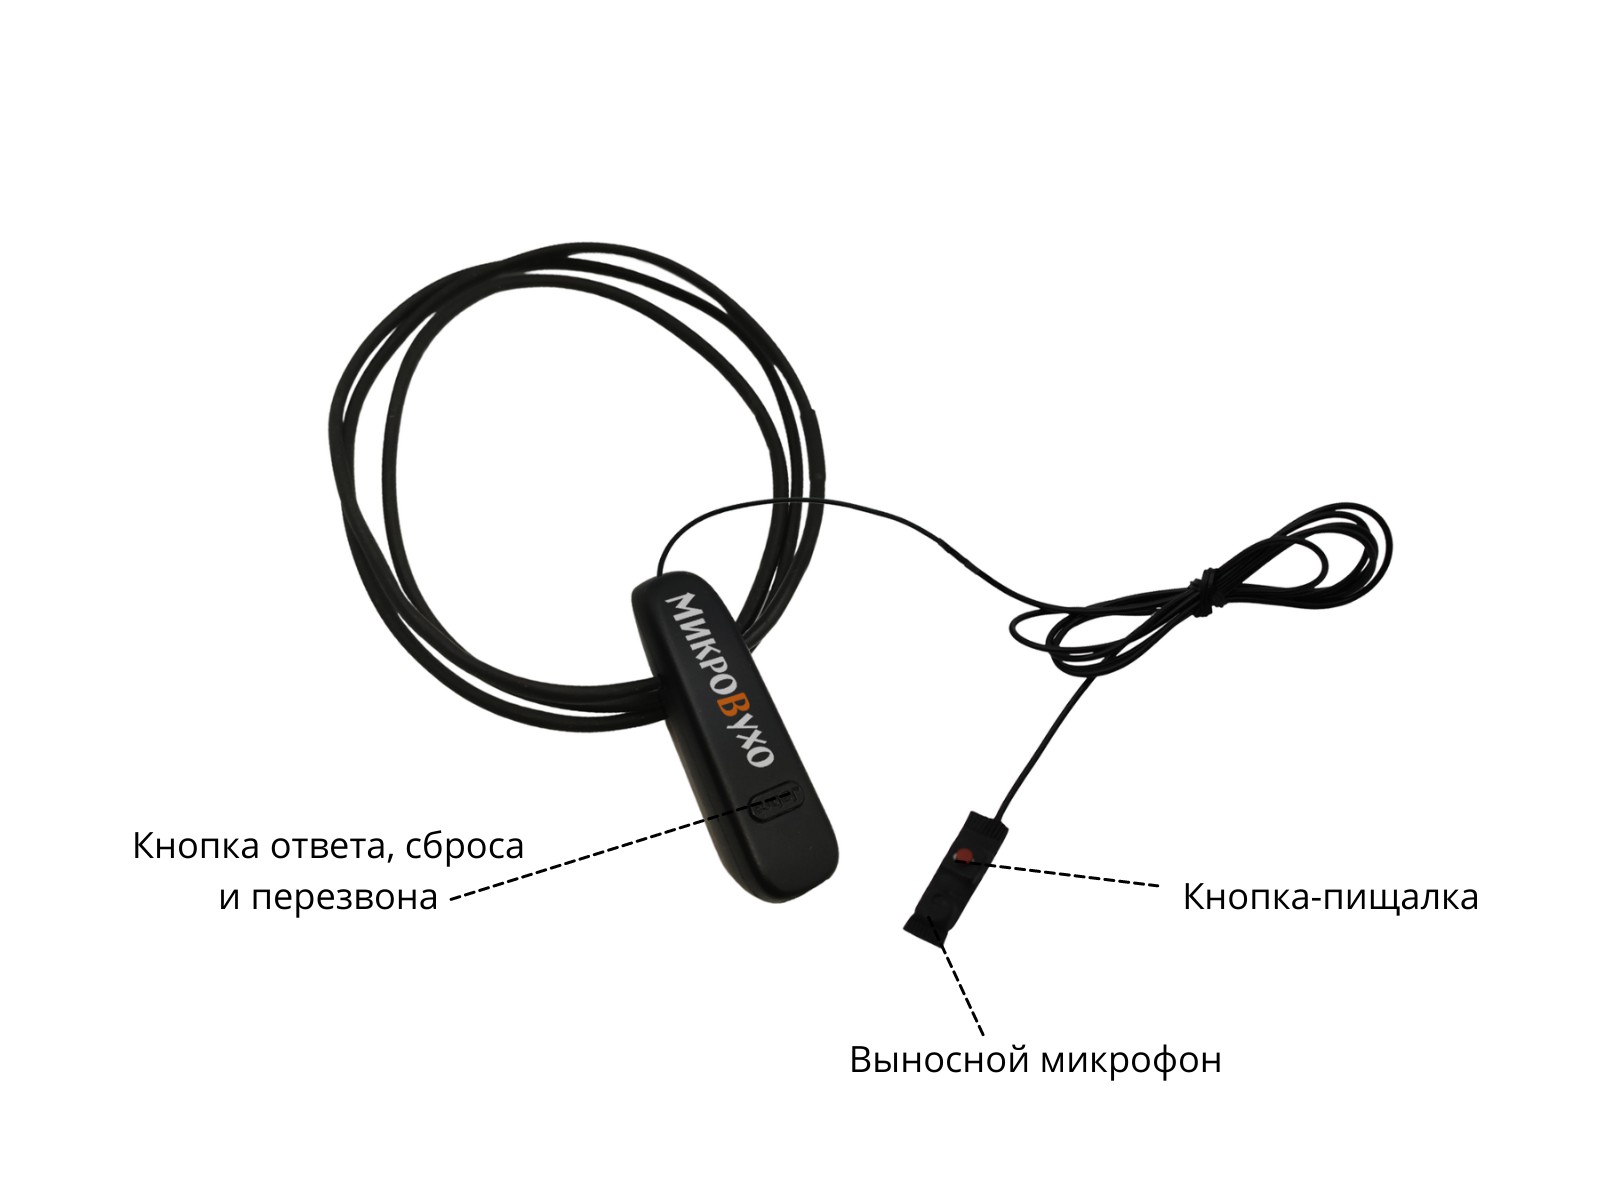 Гарнитура Bluetooth Jabra с капсульным микронаушником Nano 4 мм 4